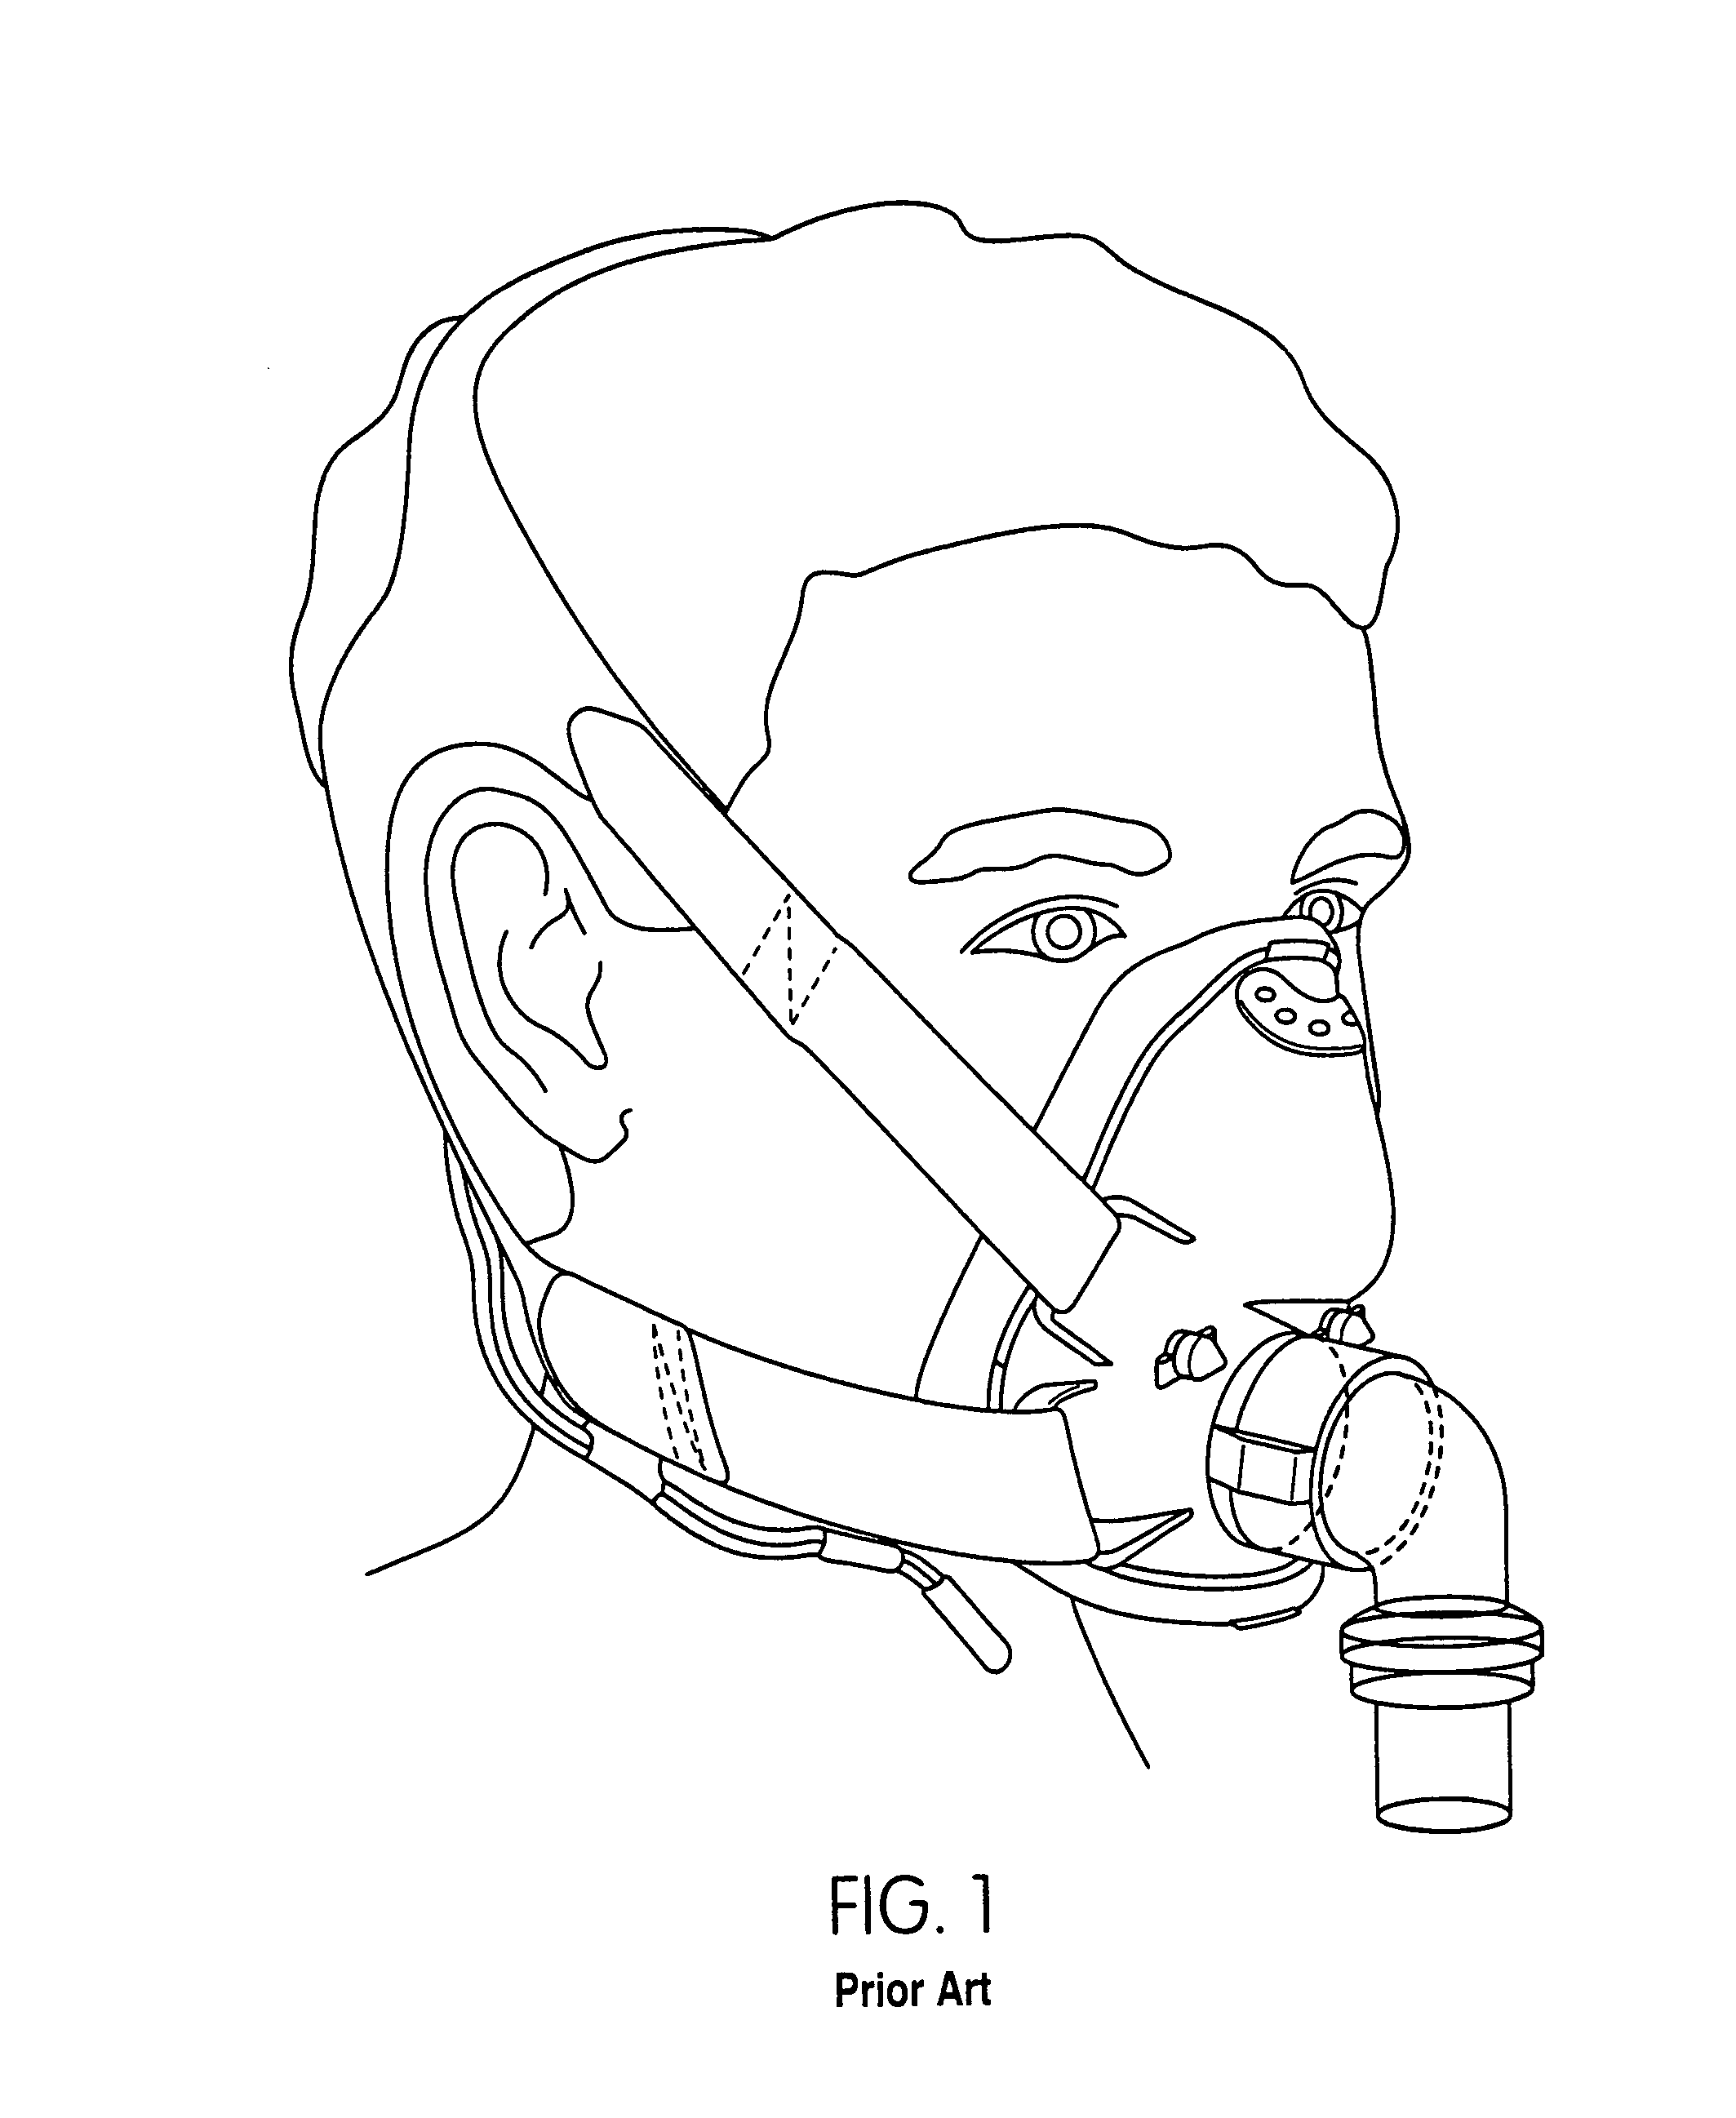 Mask brace and mask assembly